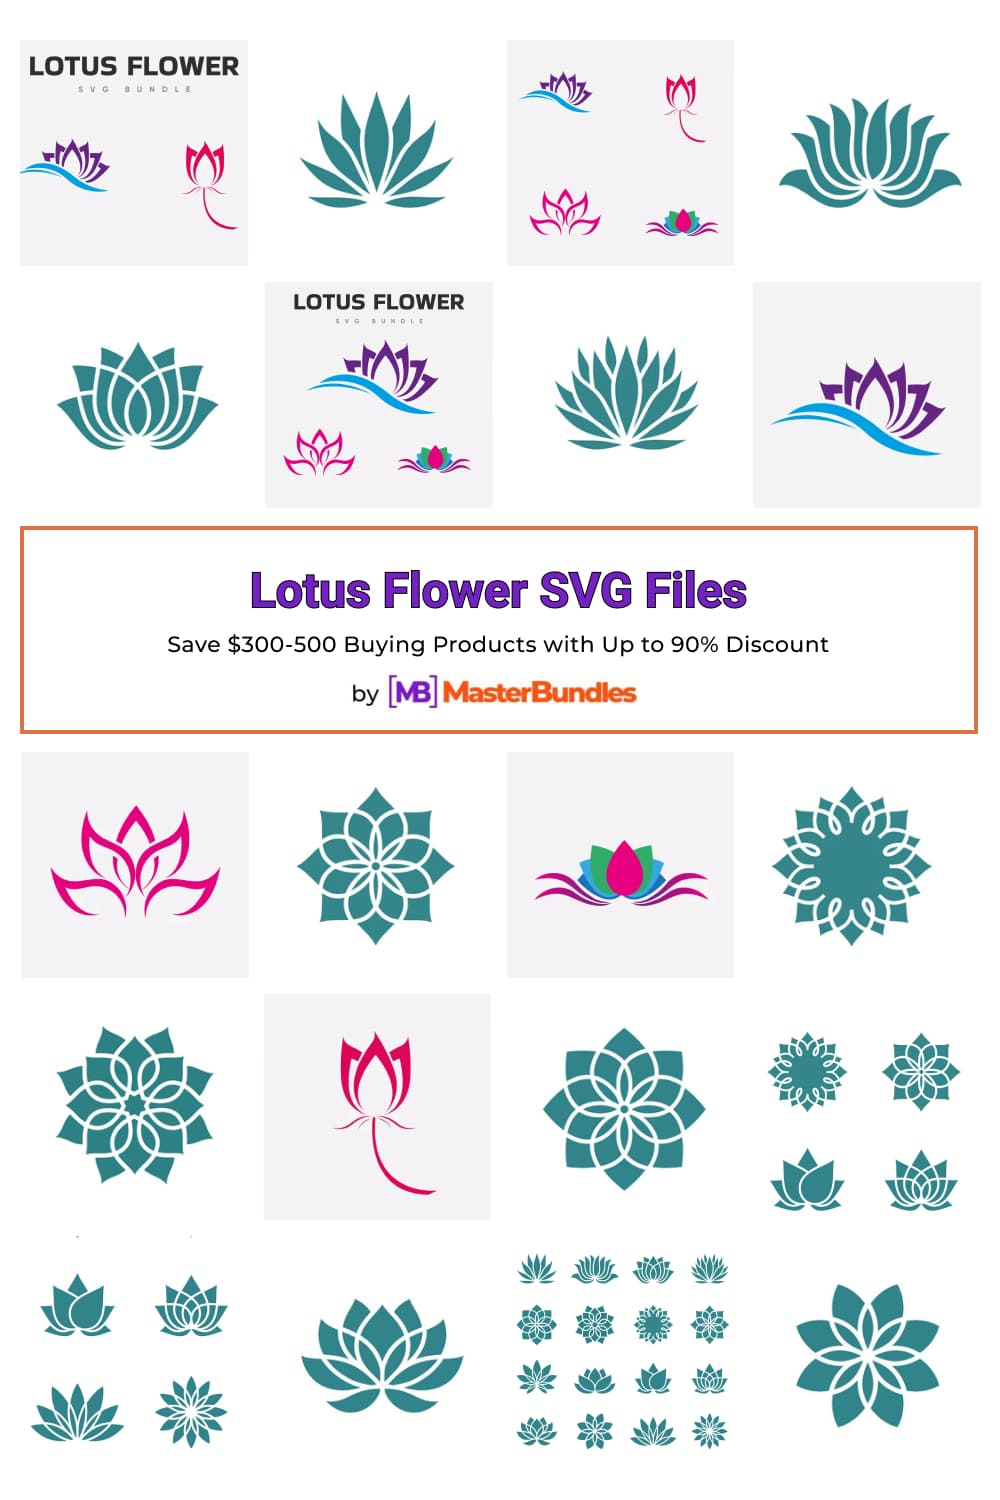 Lotus Flower SVG Files for pinterest.